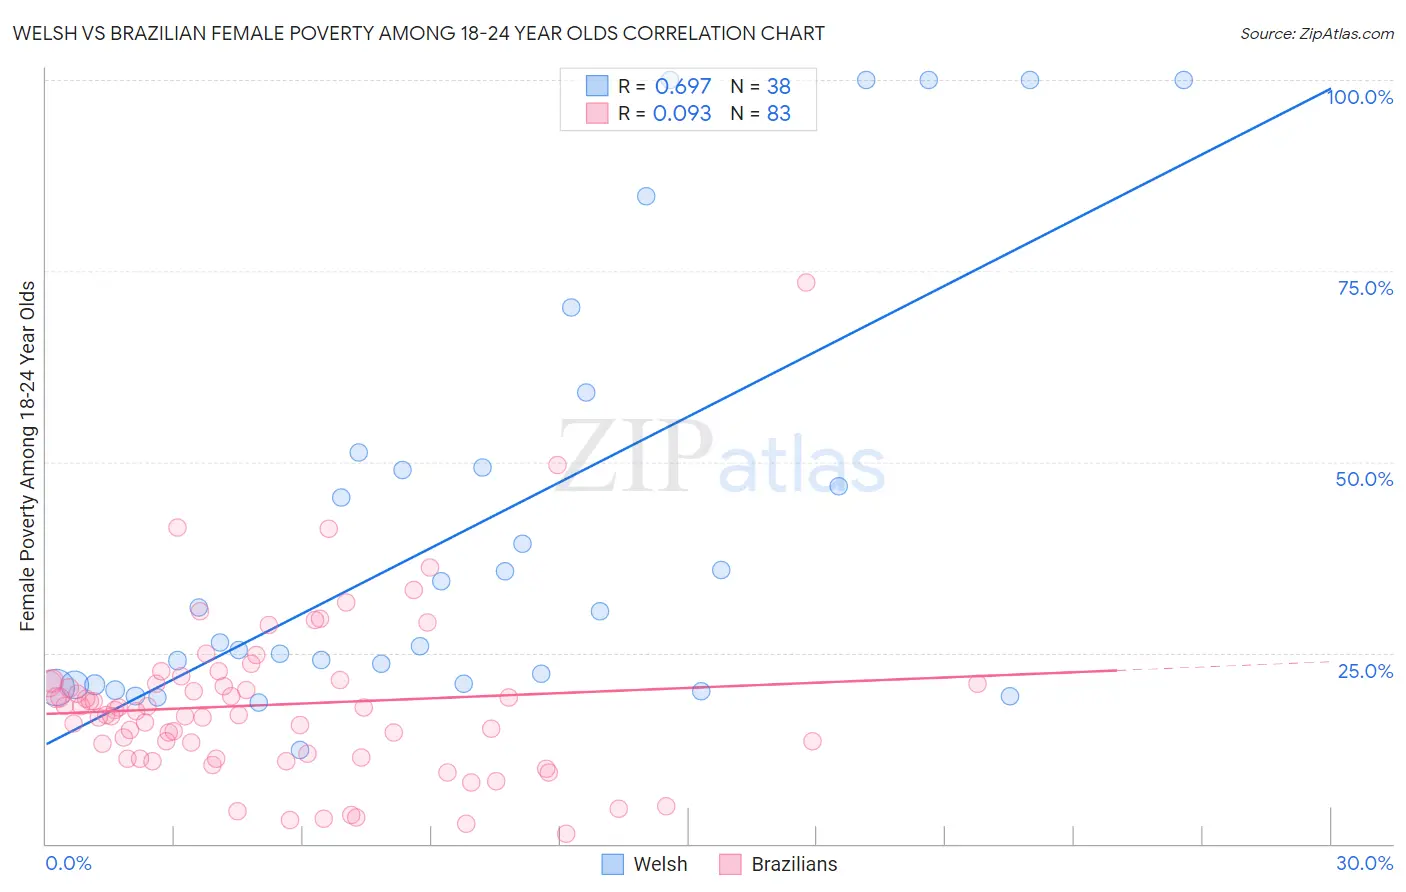 Welsh vs Brazilian Female Poverty Among 18-24 Year Olds